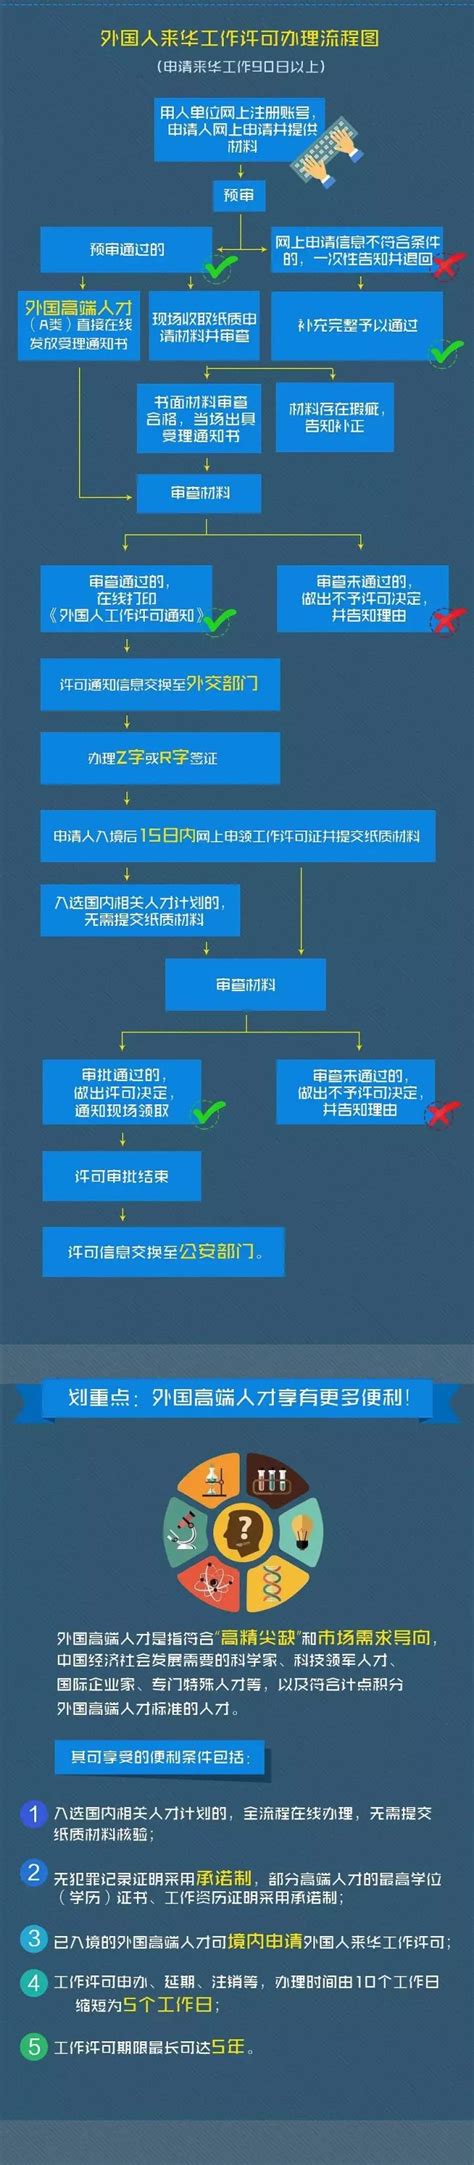 外国人来华办理工作许可流程图-上海虹口企业服务云